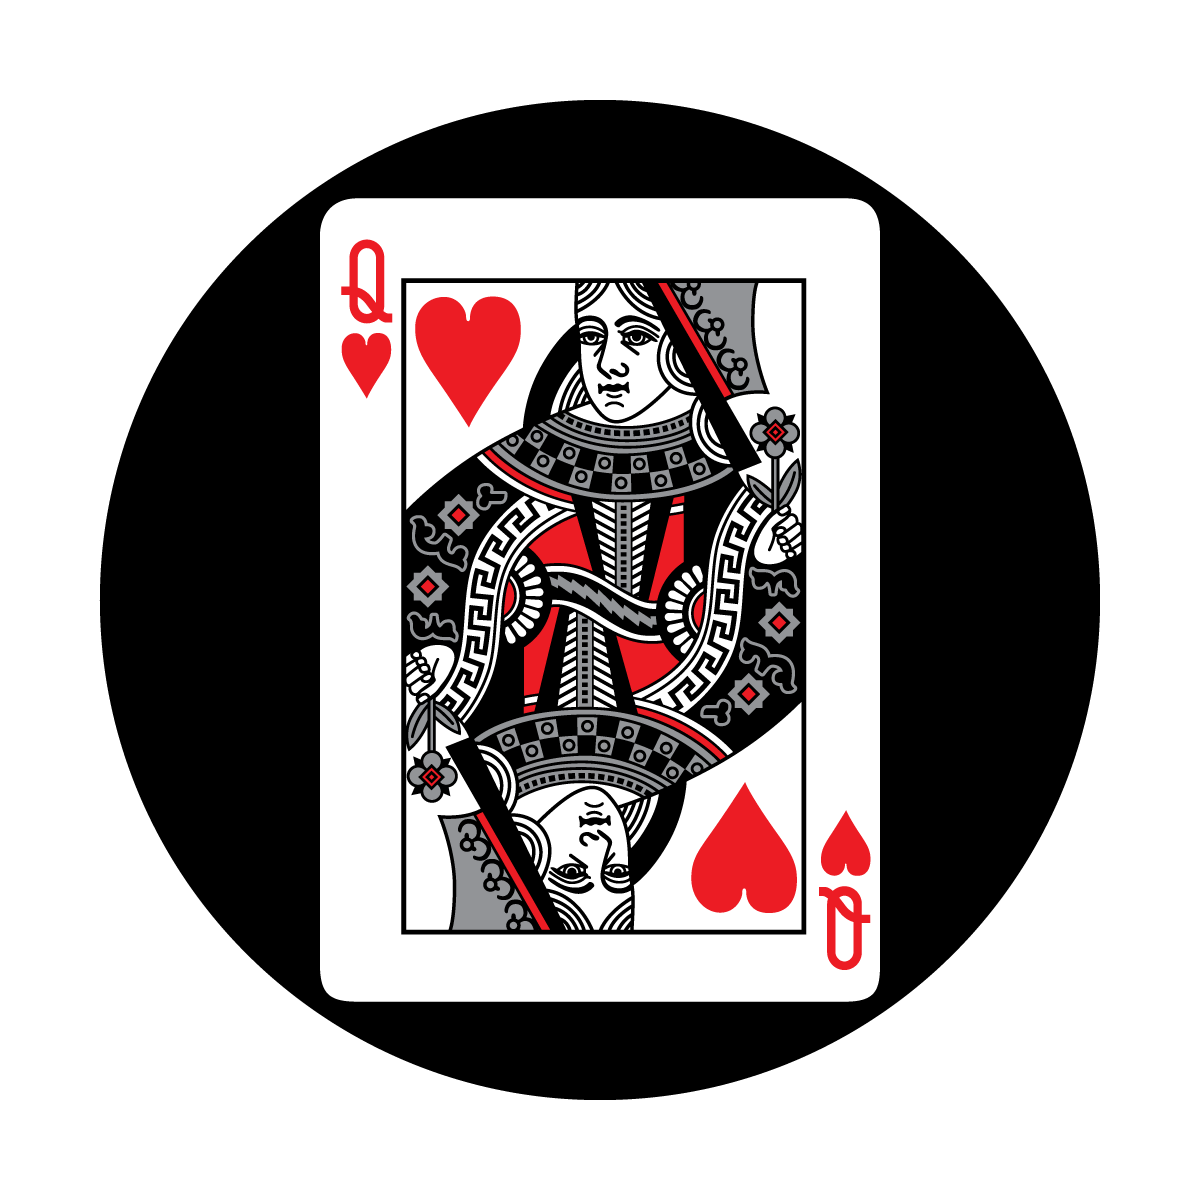 C2-0133 Red Card - Queen